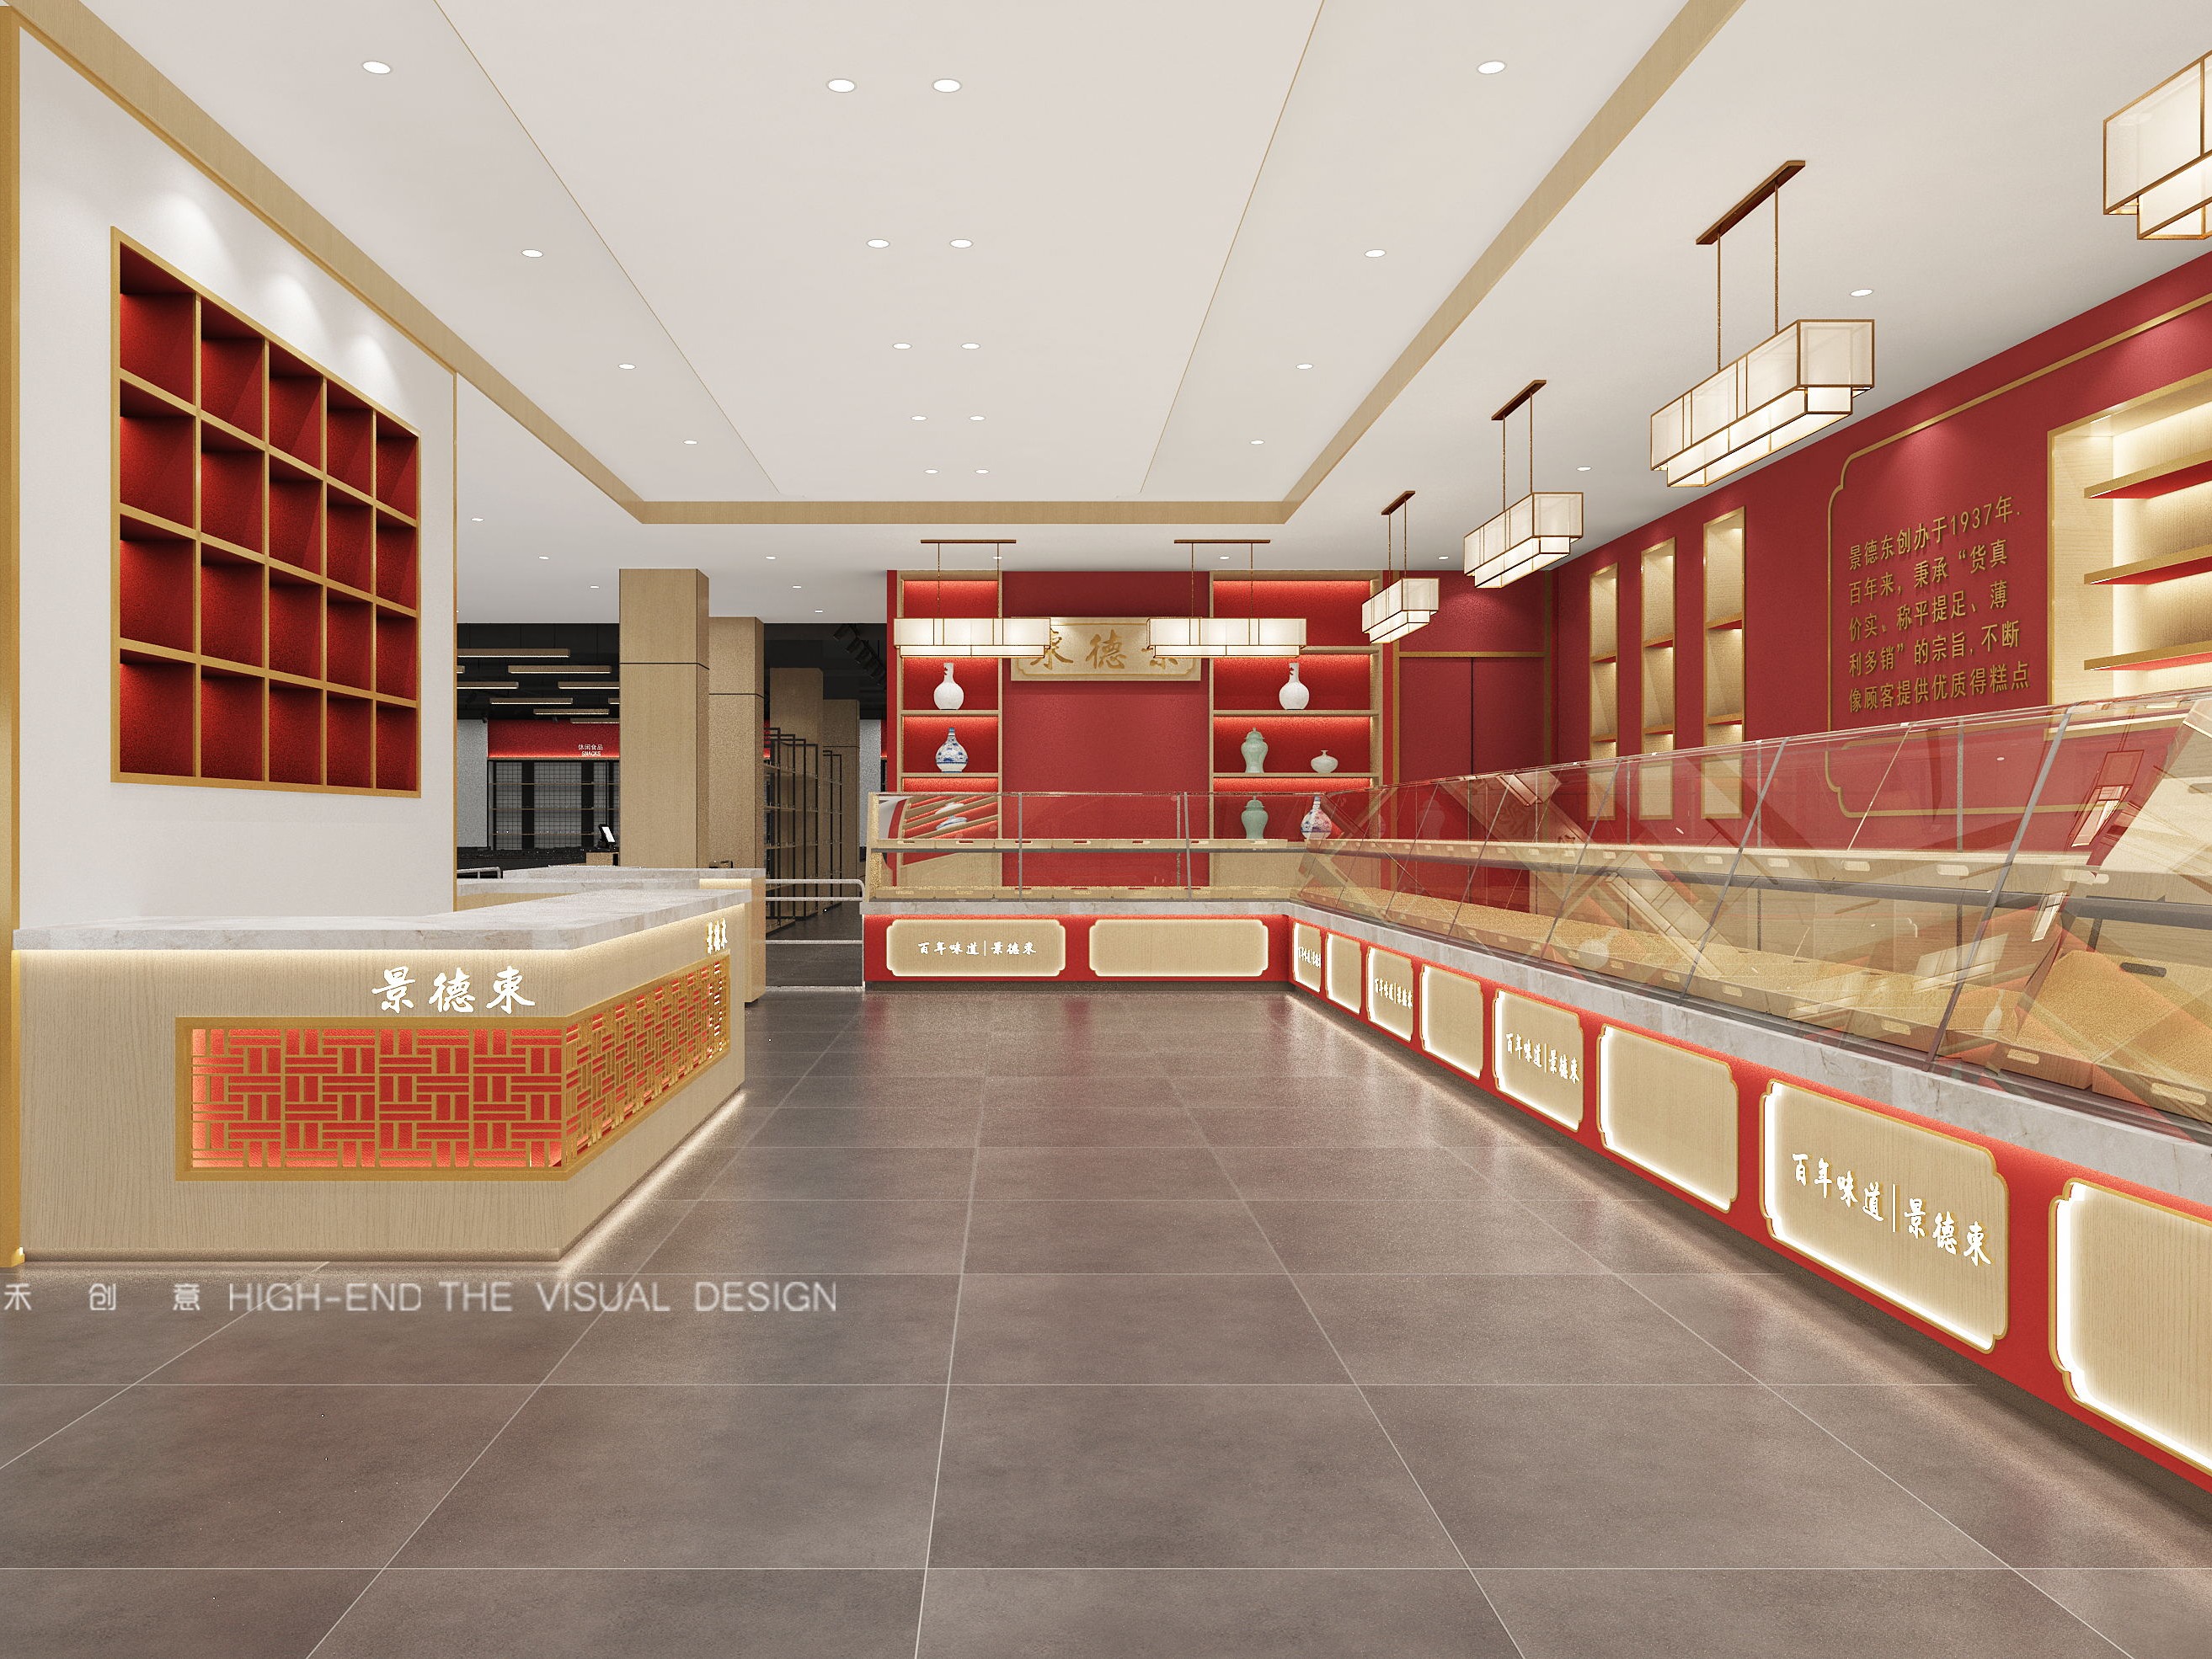 温哥华·“全聚德”精品餐厅-京城百年老字号的品牌新生 / 古鲁奇 | SOHO设计区